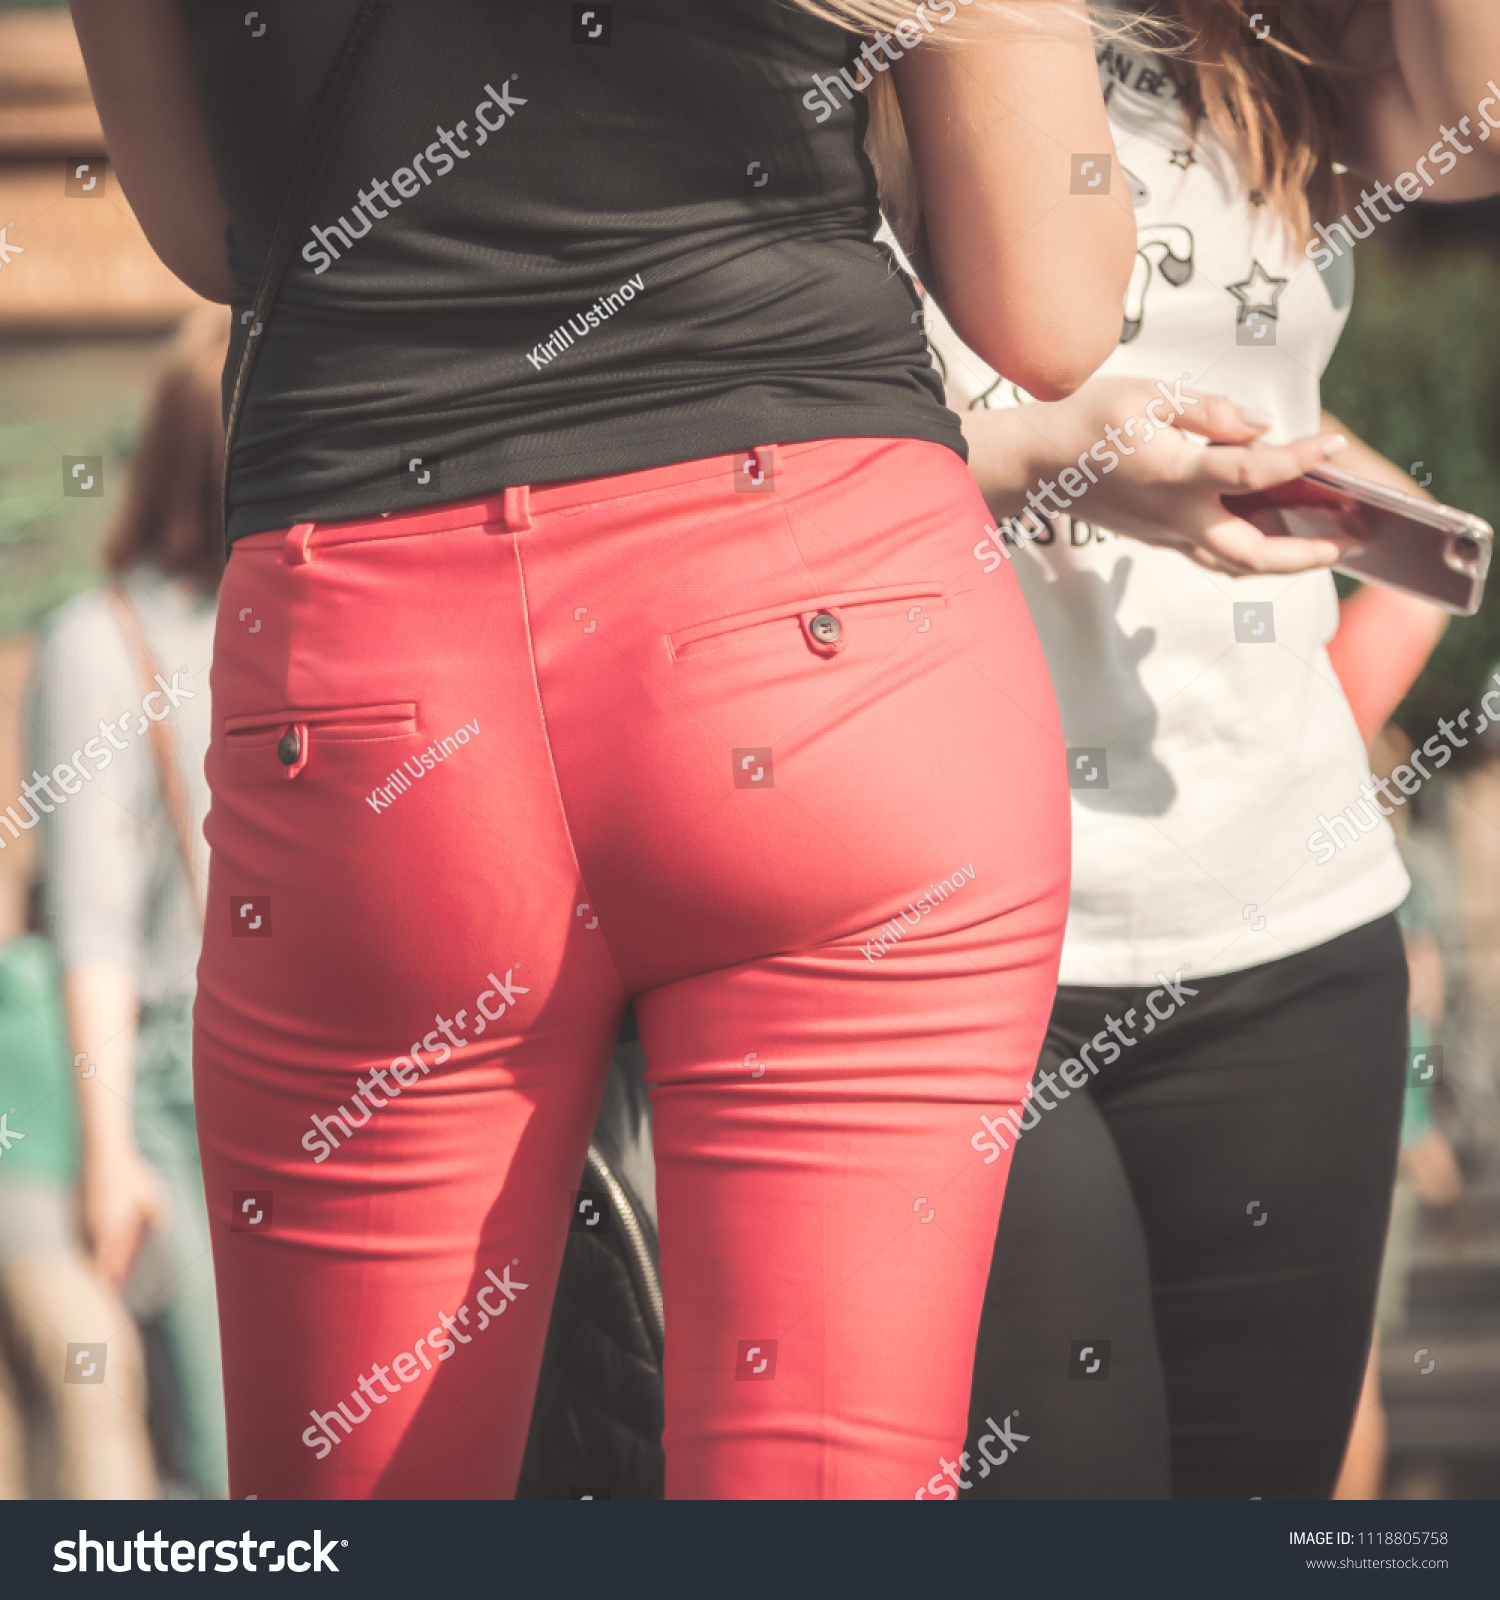 Pics Of Womens Ass